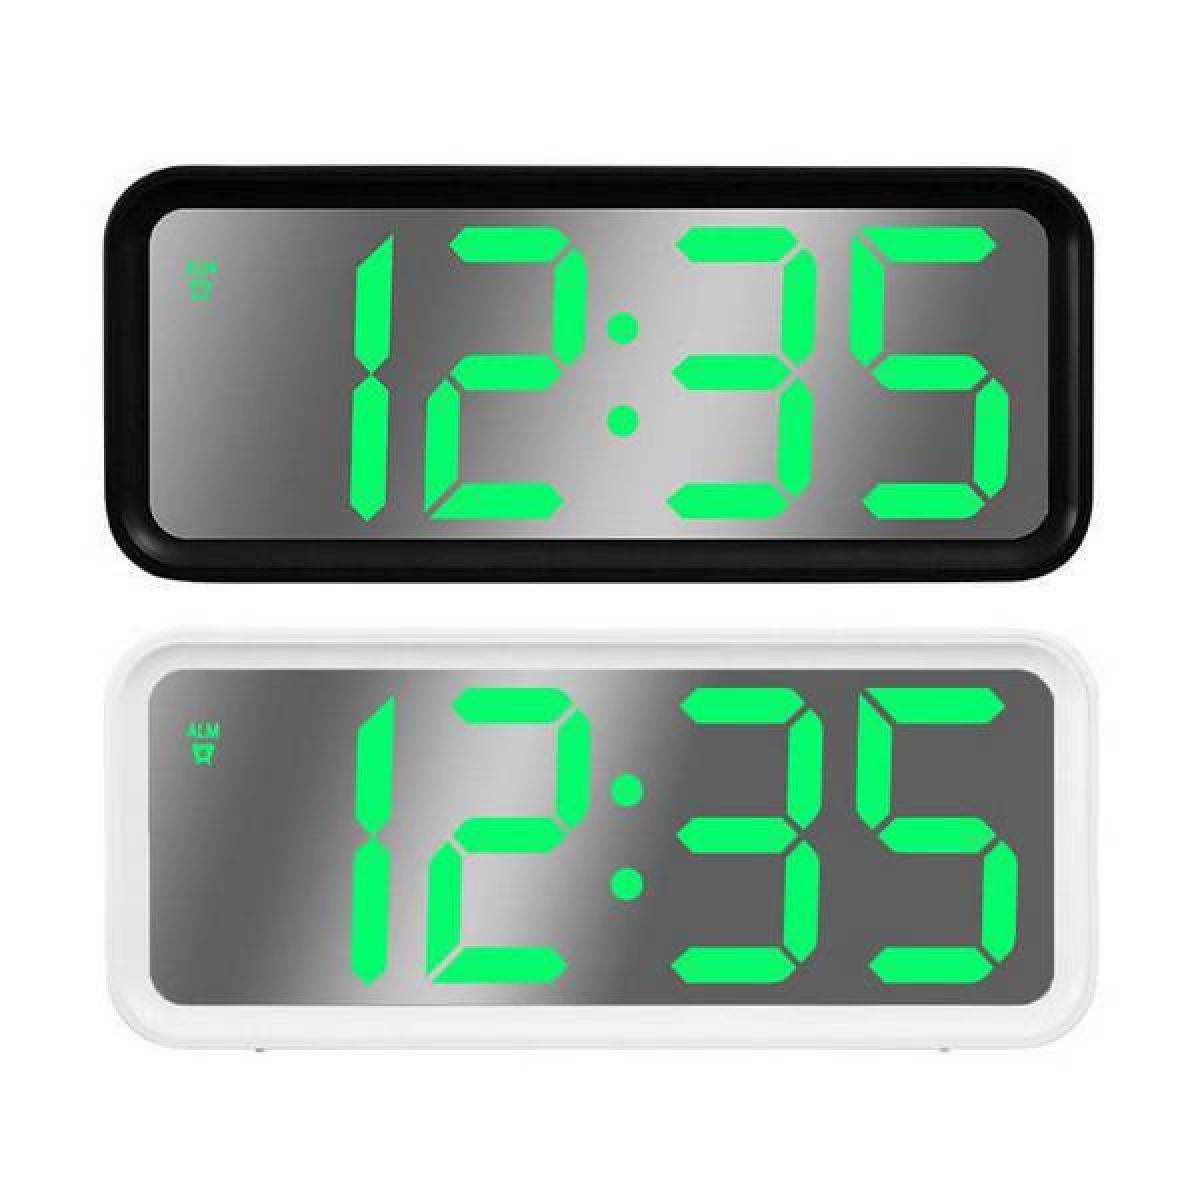 Ψηφιακό Ρολόι Με Ξυπνητήρι & Θερμόμετρο "Mirror" Λευκό GT087